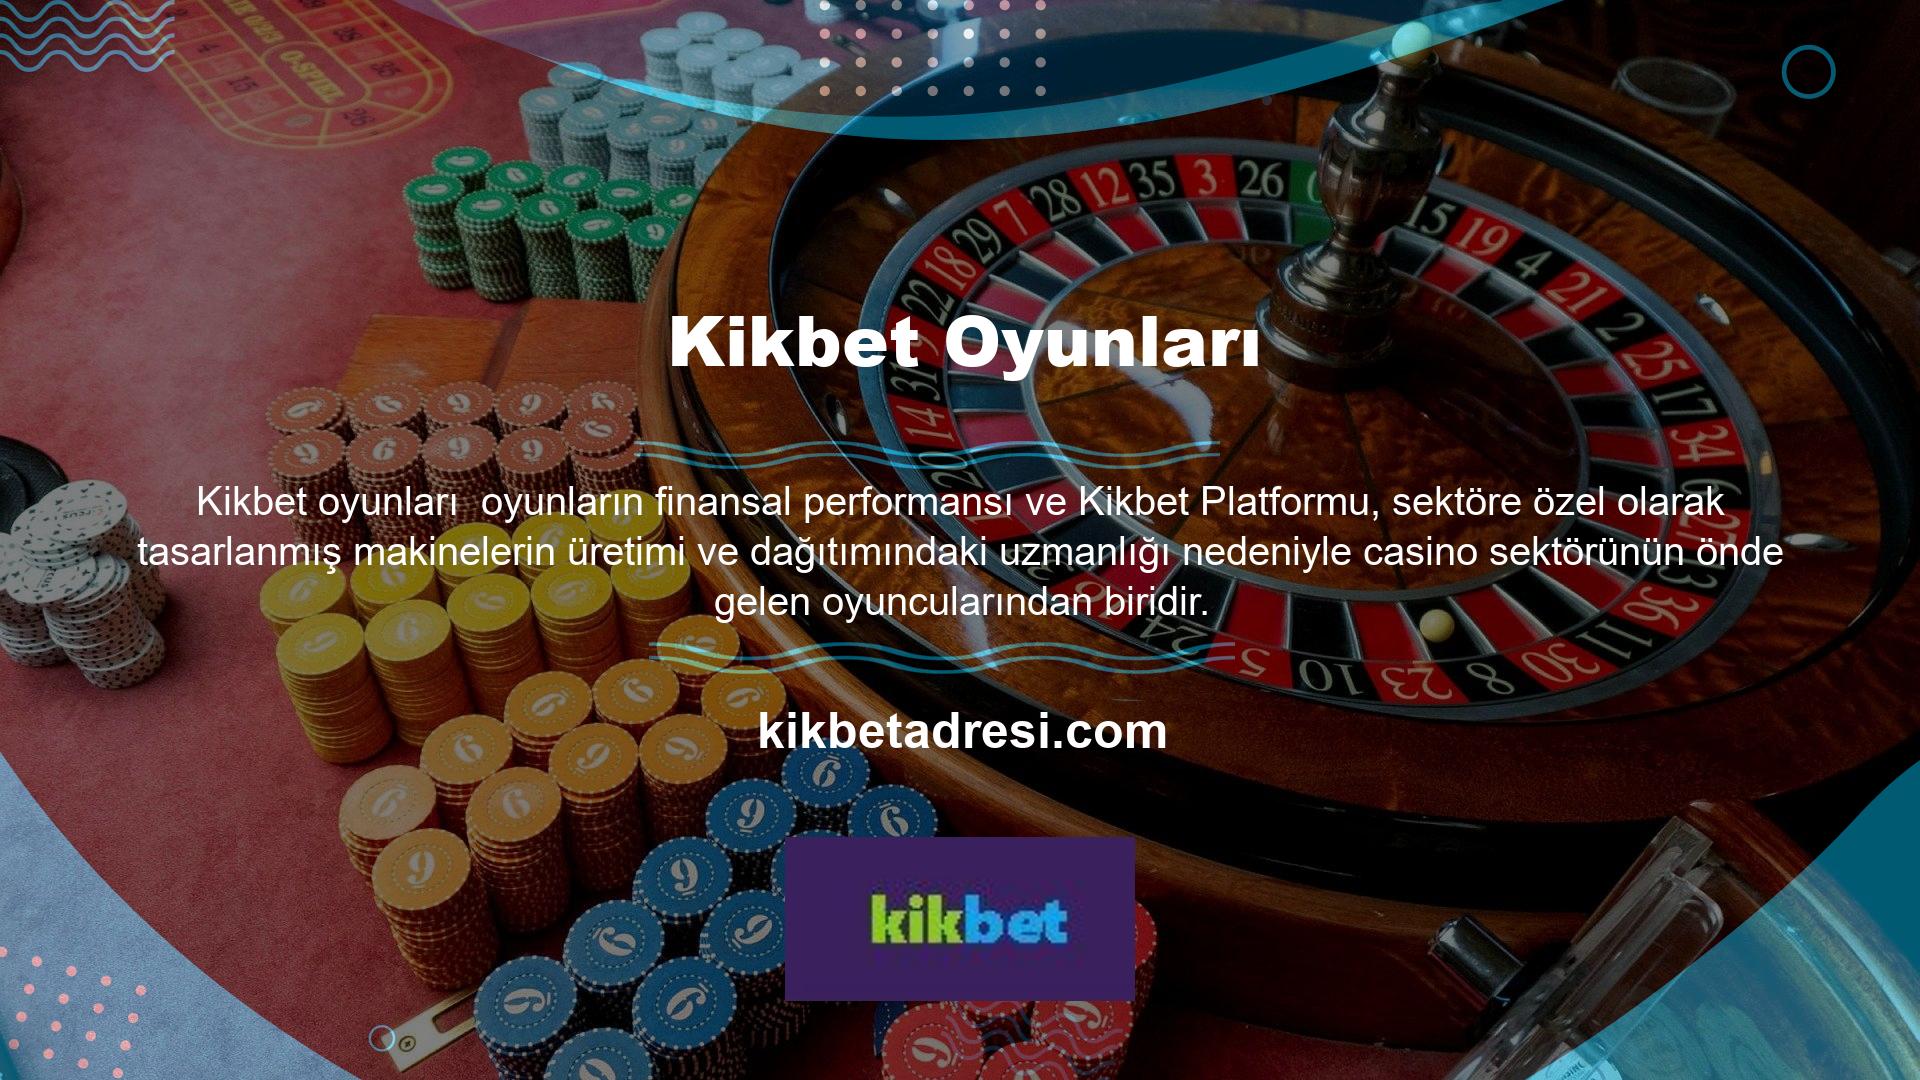 Kikbet mobil oyun platformunun geleneksel slot sistemi, platform yetkilileri ve çalışanları tarafından oluşturulmuş olup birçok Avrupa ülkesinde kullanılmaktadır